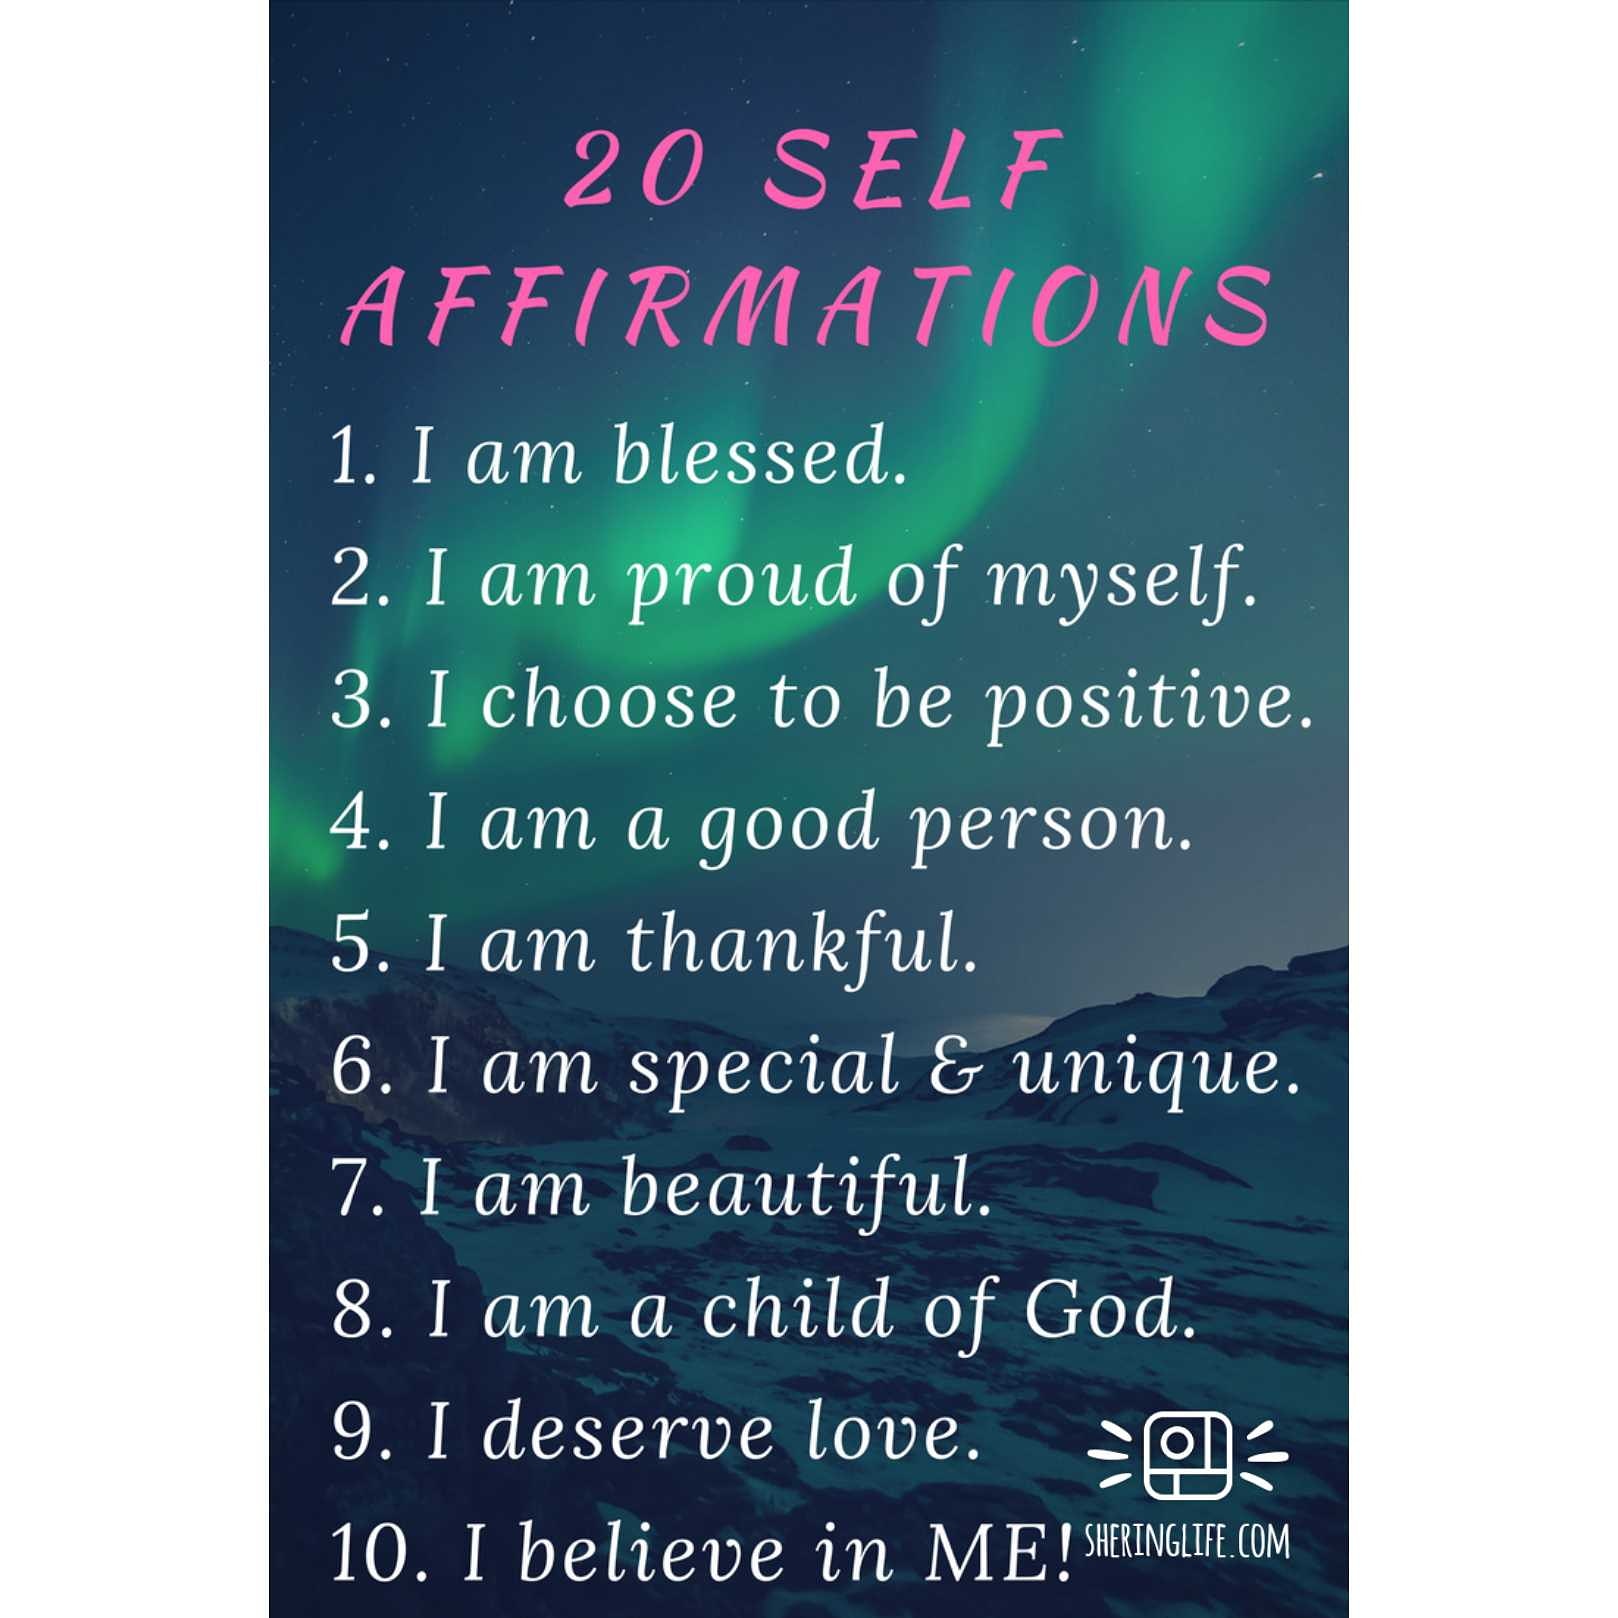 20 Self Affirmations